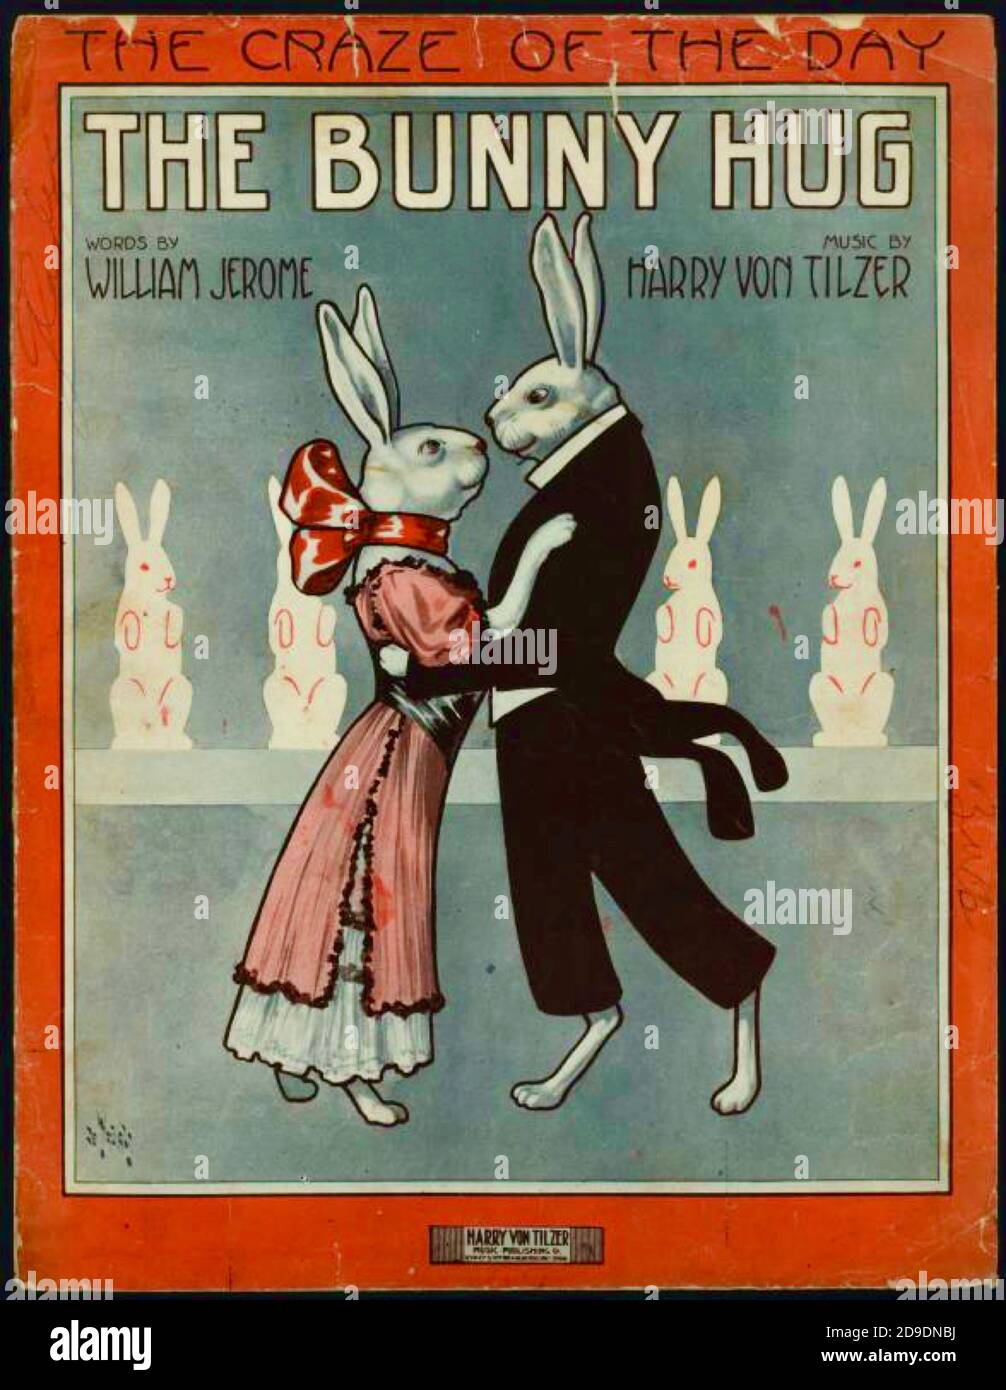 Il Bunny Hug - la mania del giorno - colore migliorato. Animali in situazioni umane. Sala da ballo di conigli, corteggiamento di tuxedos e amore. Foto Stock